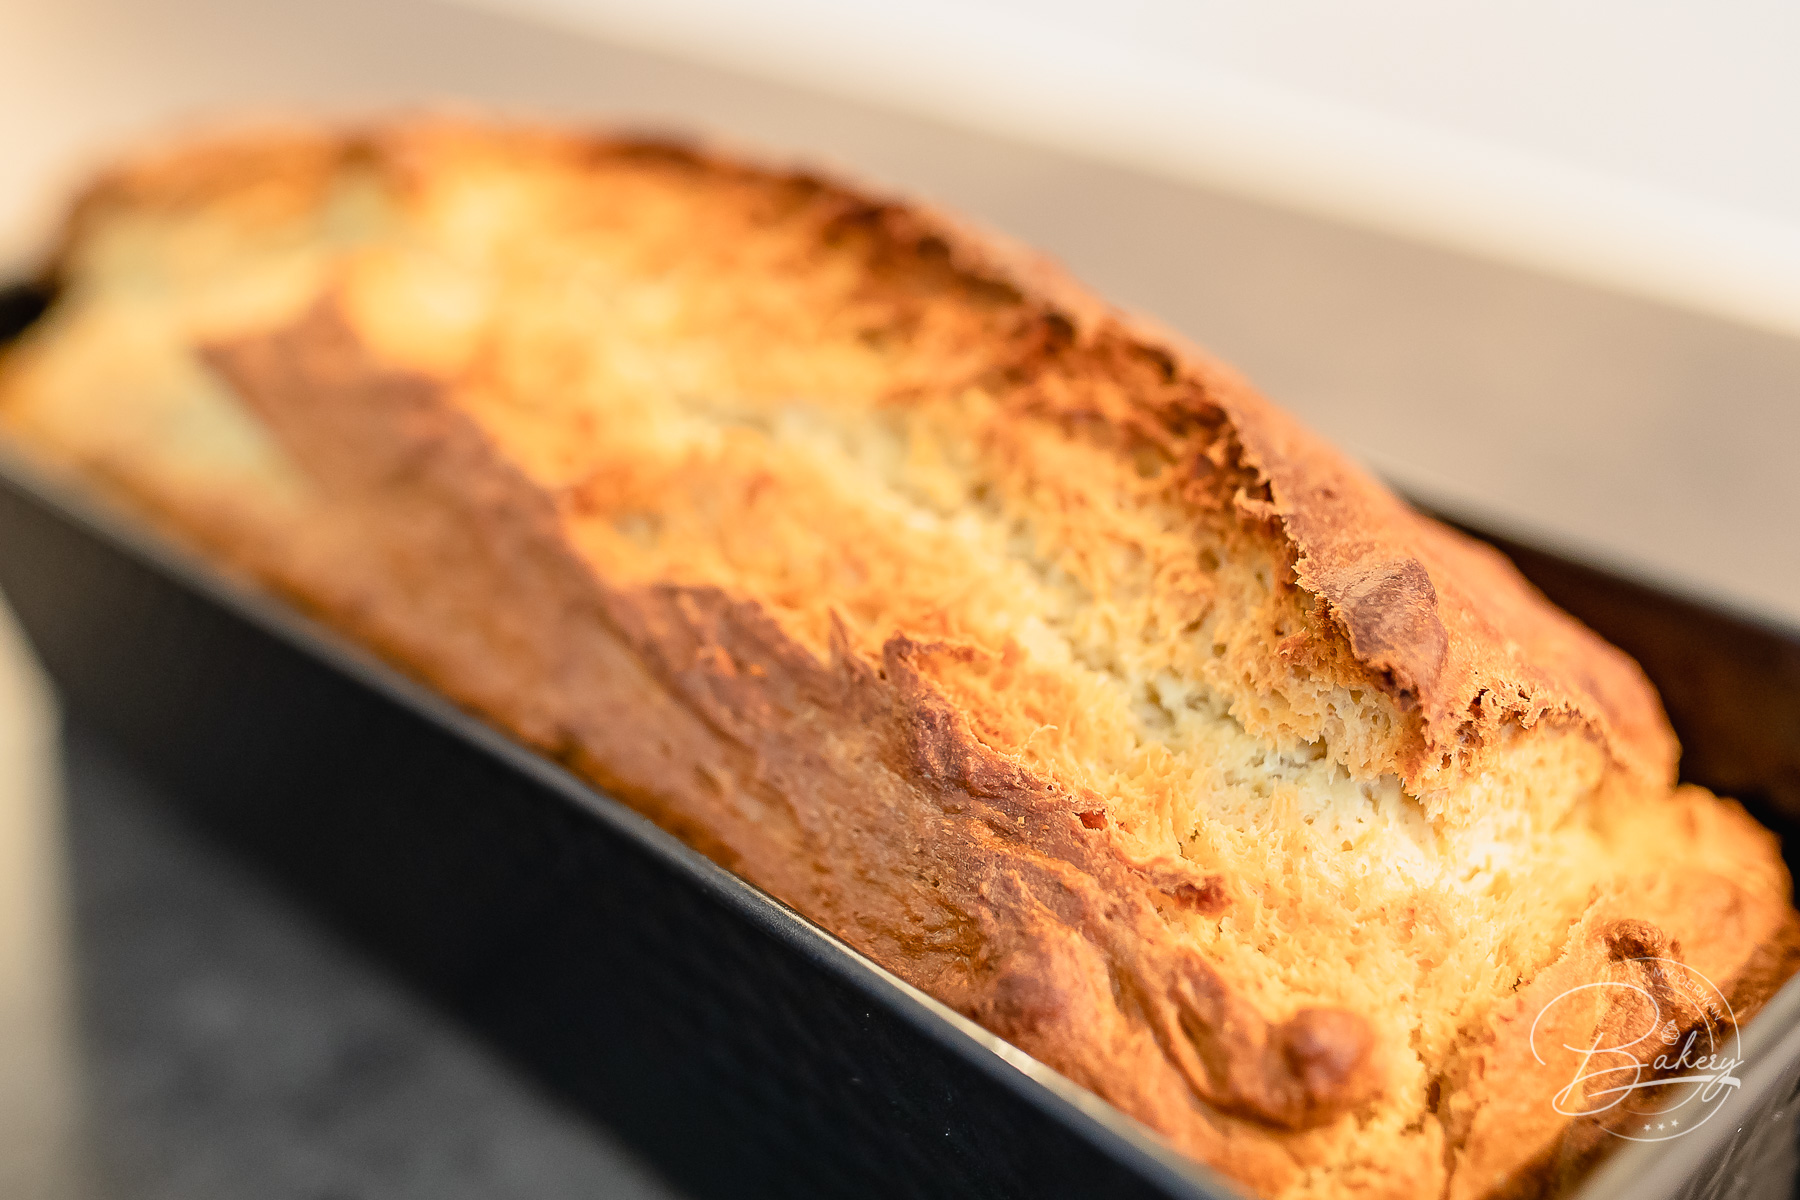 Einfacher süßer Stuten - Brot Rezept - Leckeres Brot schnell selbstgemacht - gelingt immer - wie beim Bäcker - frisch selbst gebacken - Sonntagsfrühstück - Stuten und süßes Weißbrot - Rezept für einfachen süßen Stuten als Brot Rezept. Leckeres süßes Brot schnell gebacken. Zutaten: Mehl, Zucker, Milch, Eier, Hefe, Butter